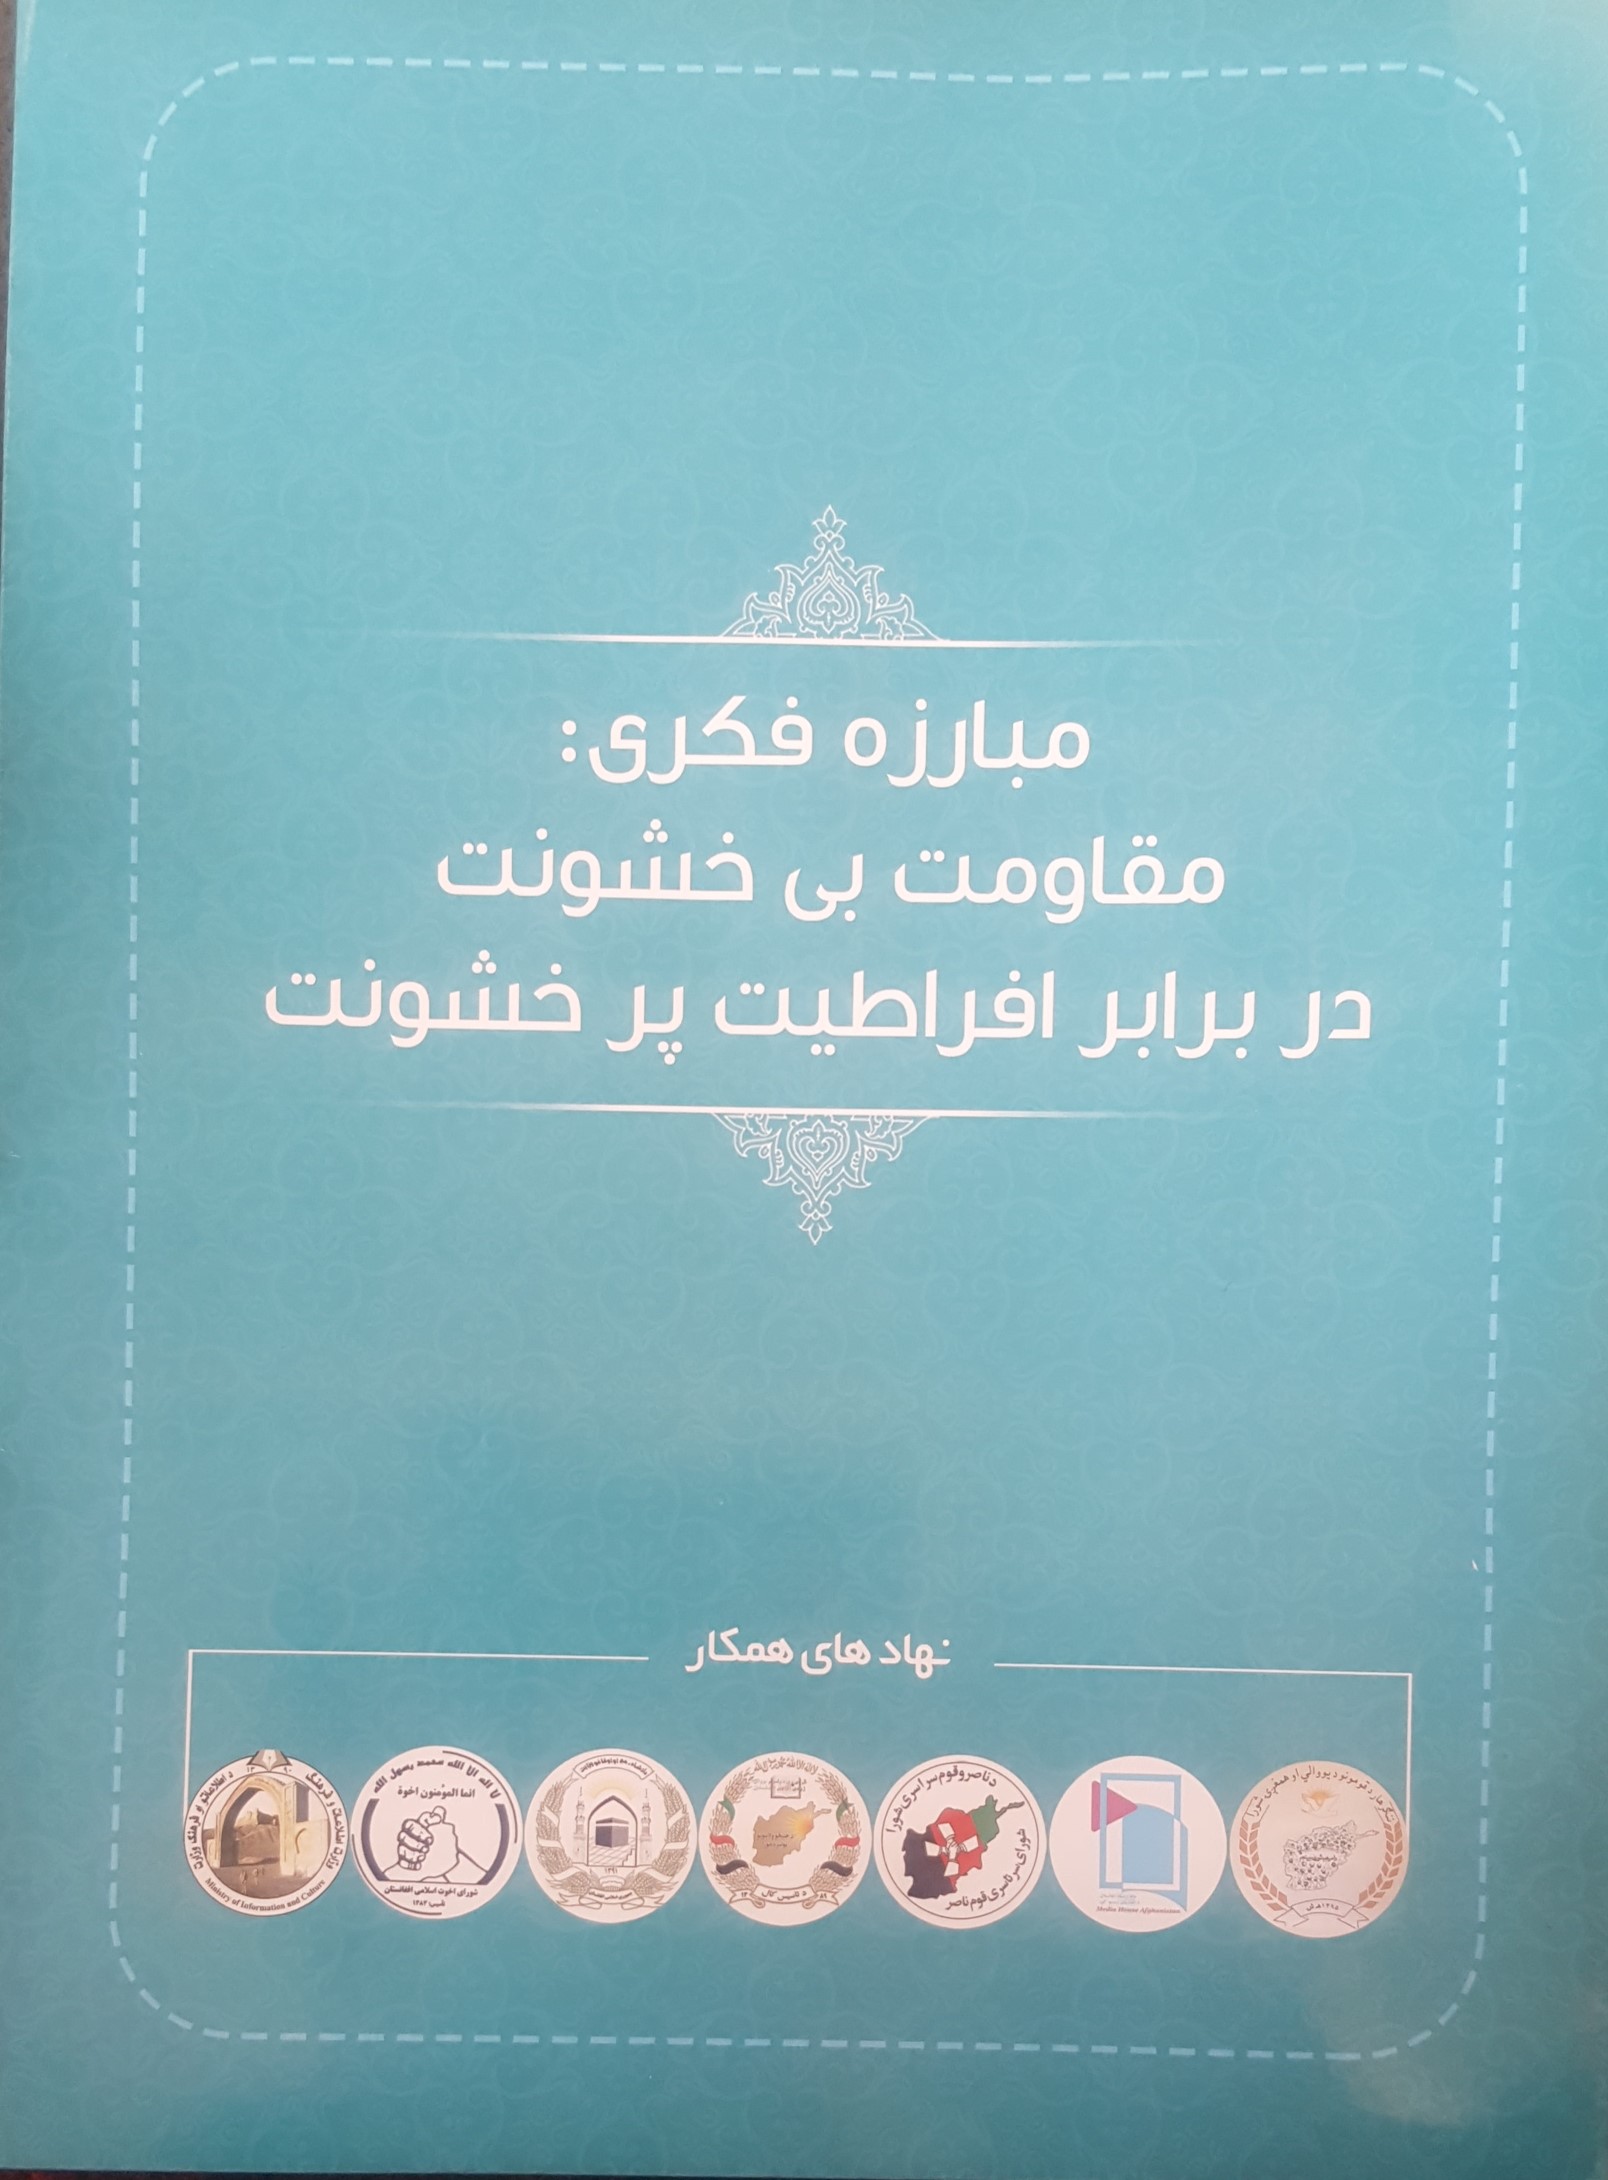 واکنش بر بهره‌برداری غیرقانونی از لوگو شورای اخوت اسلامی افغانستان